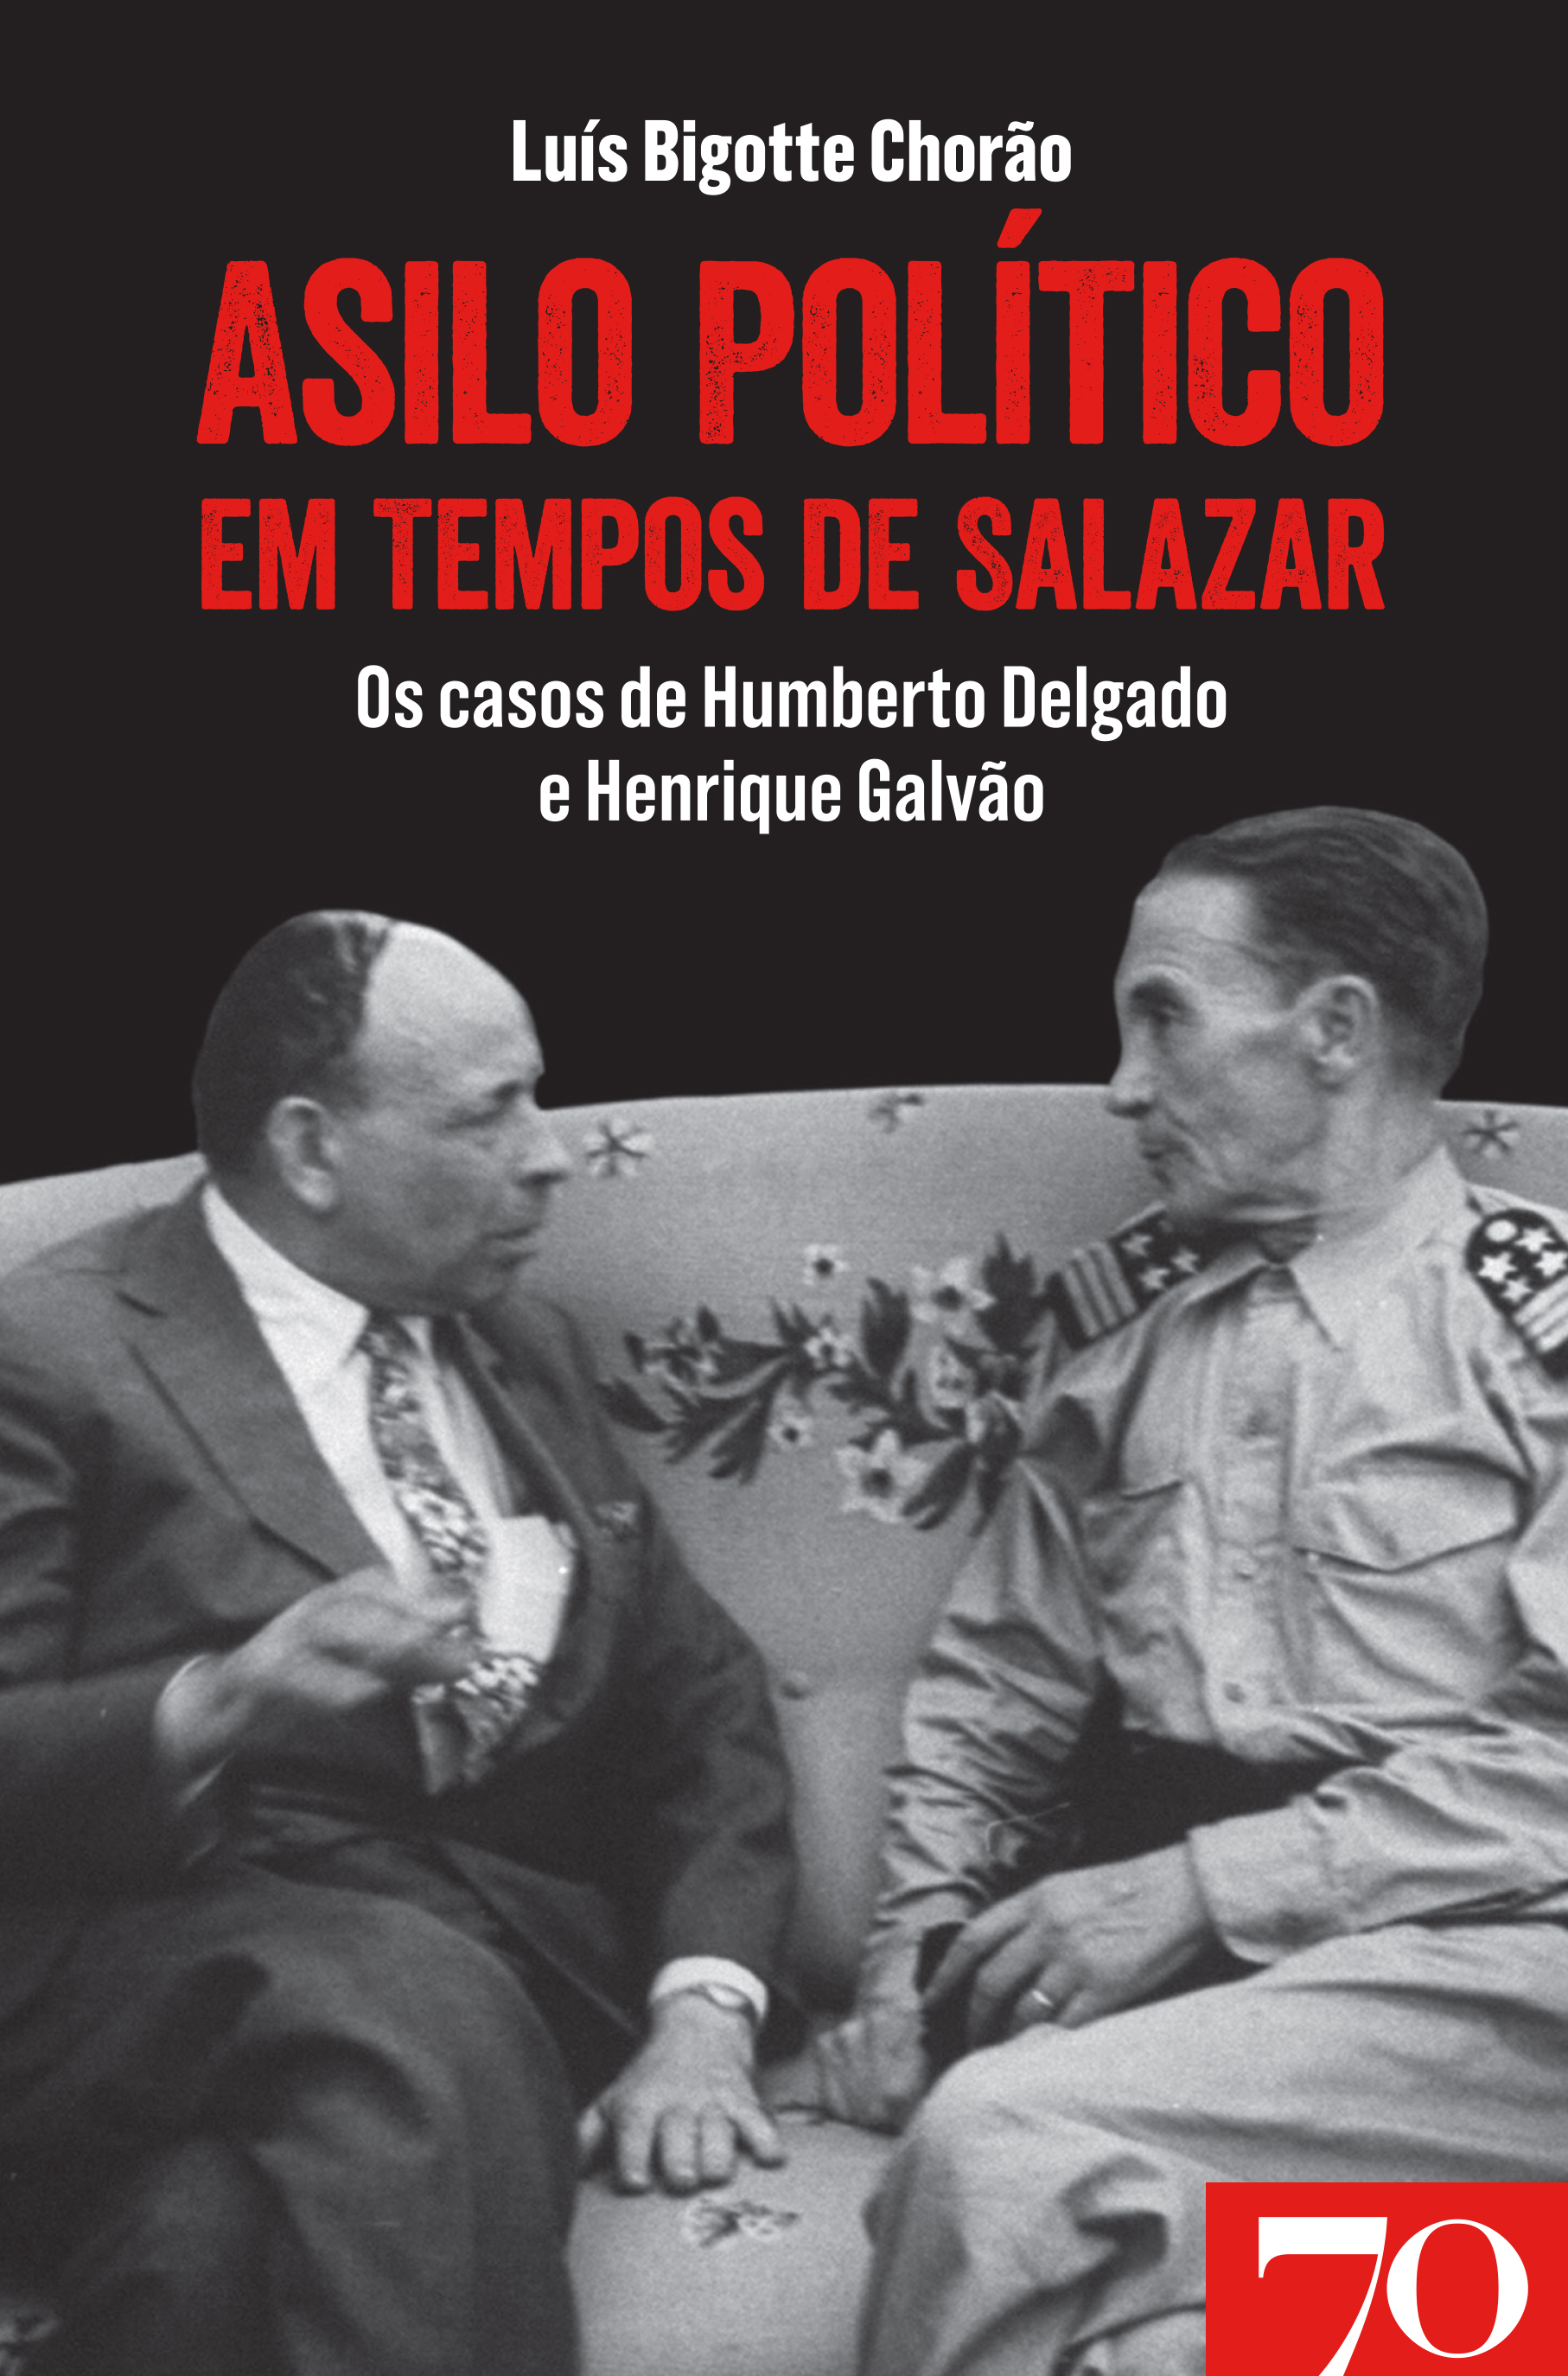 Asilo Político em Tempos de Salazar - Os Casos de Humberto Delgado e Henrique Galvão